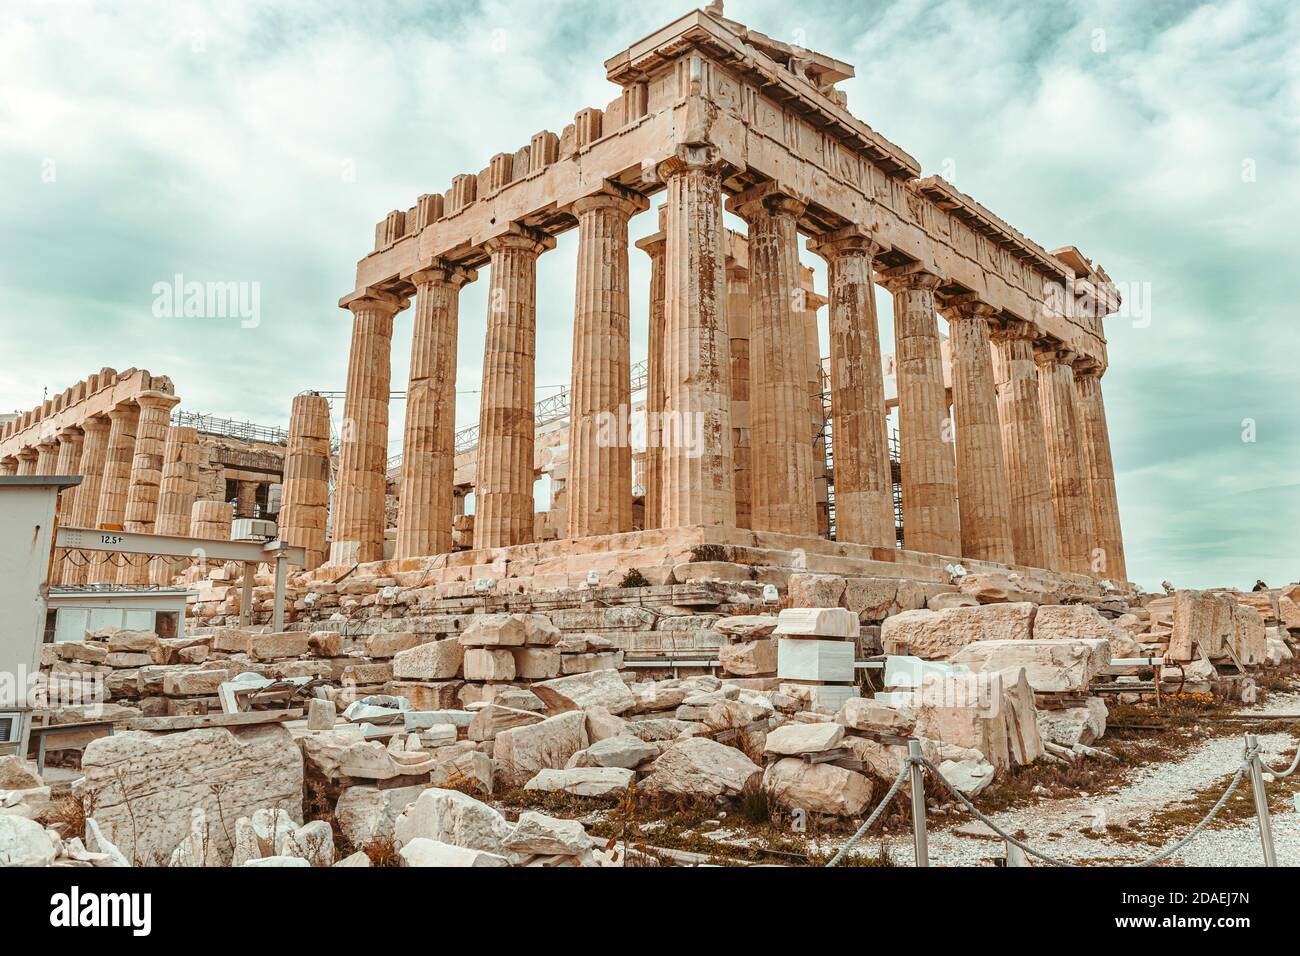 Parthenon temple on the Acropolis in Athens, Greece Stock Photo